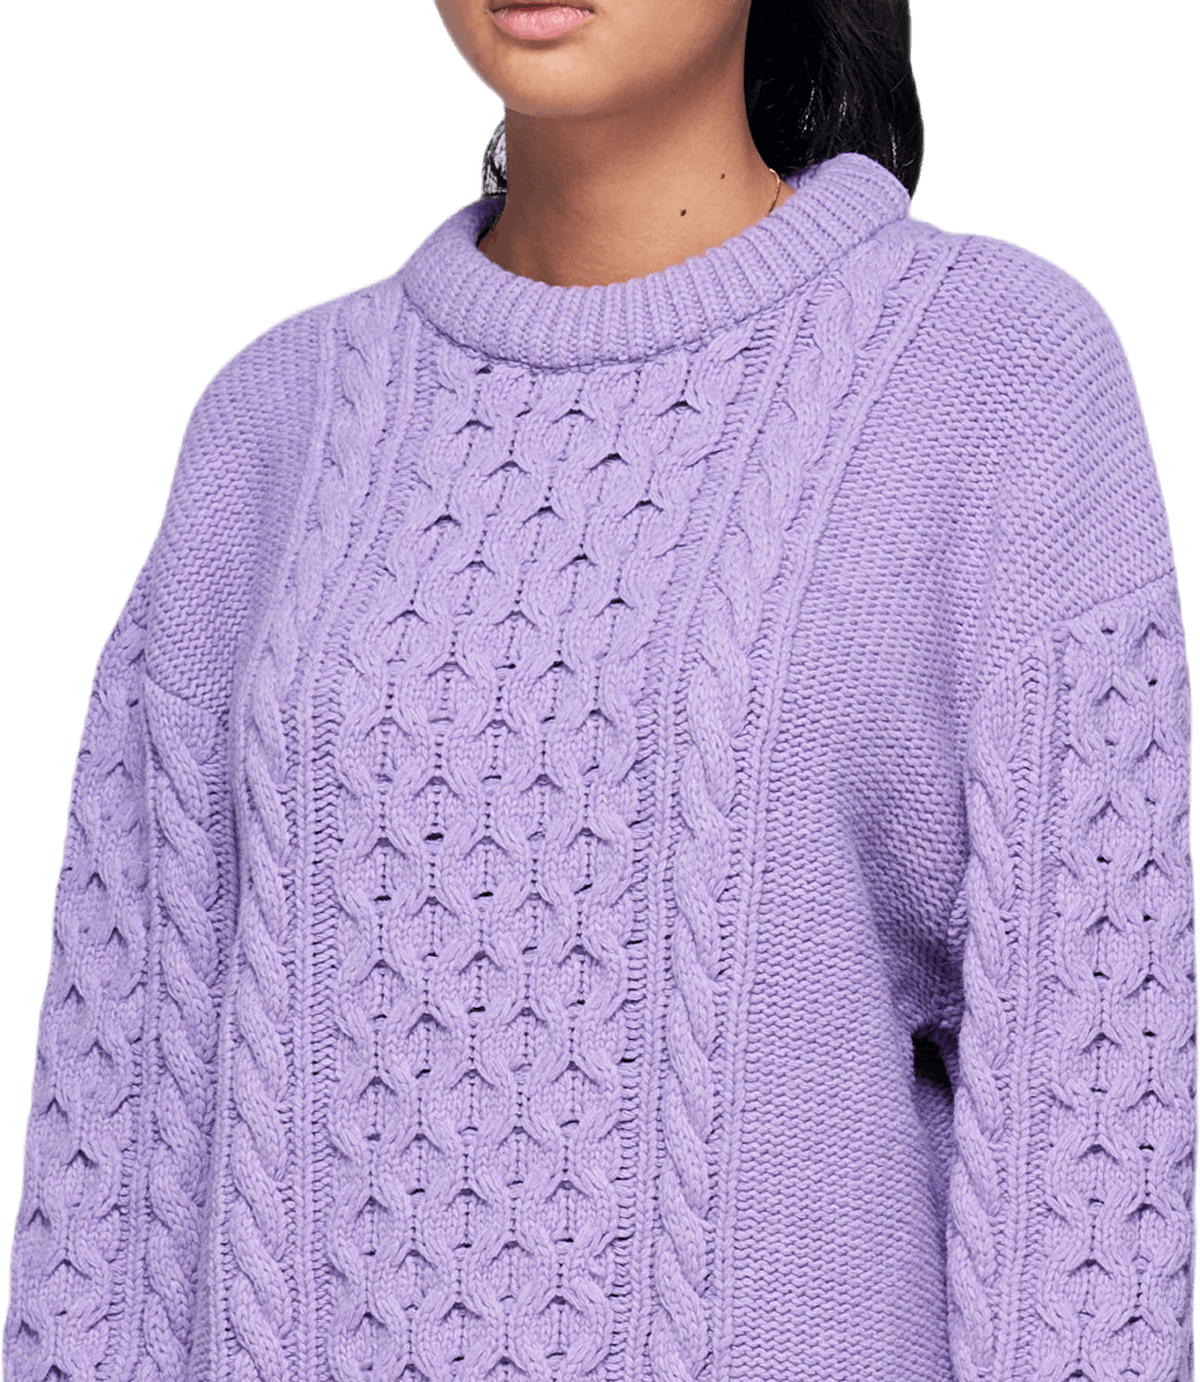 Boyfriend Knit Purple